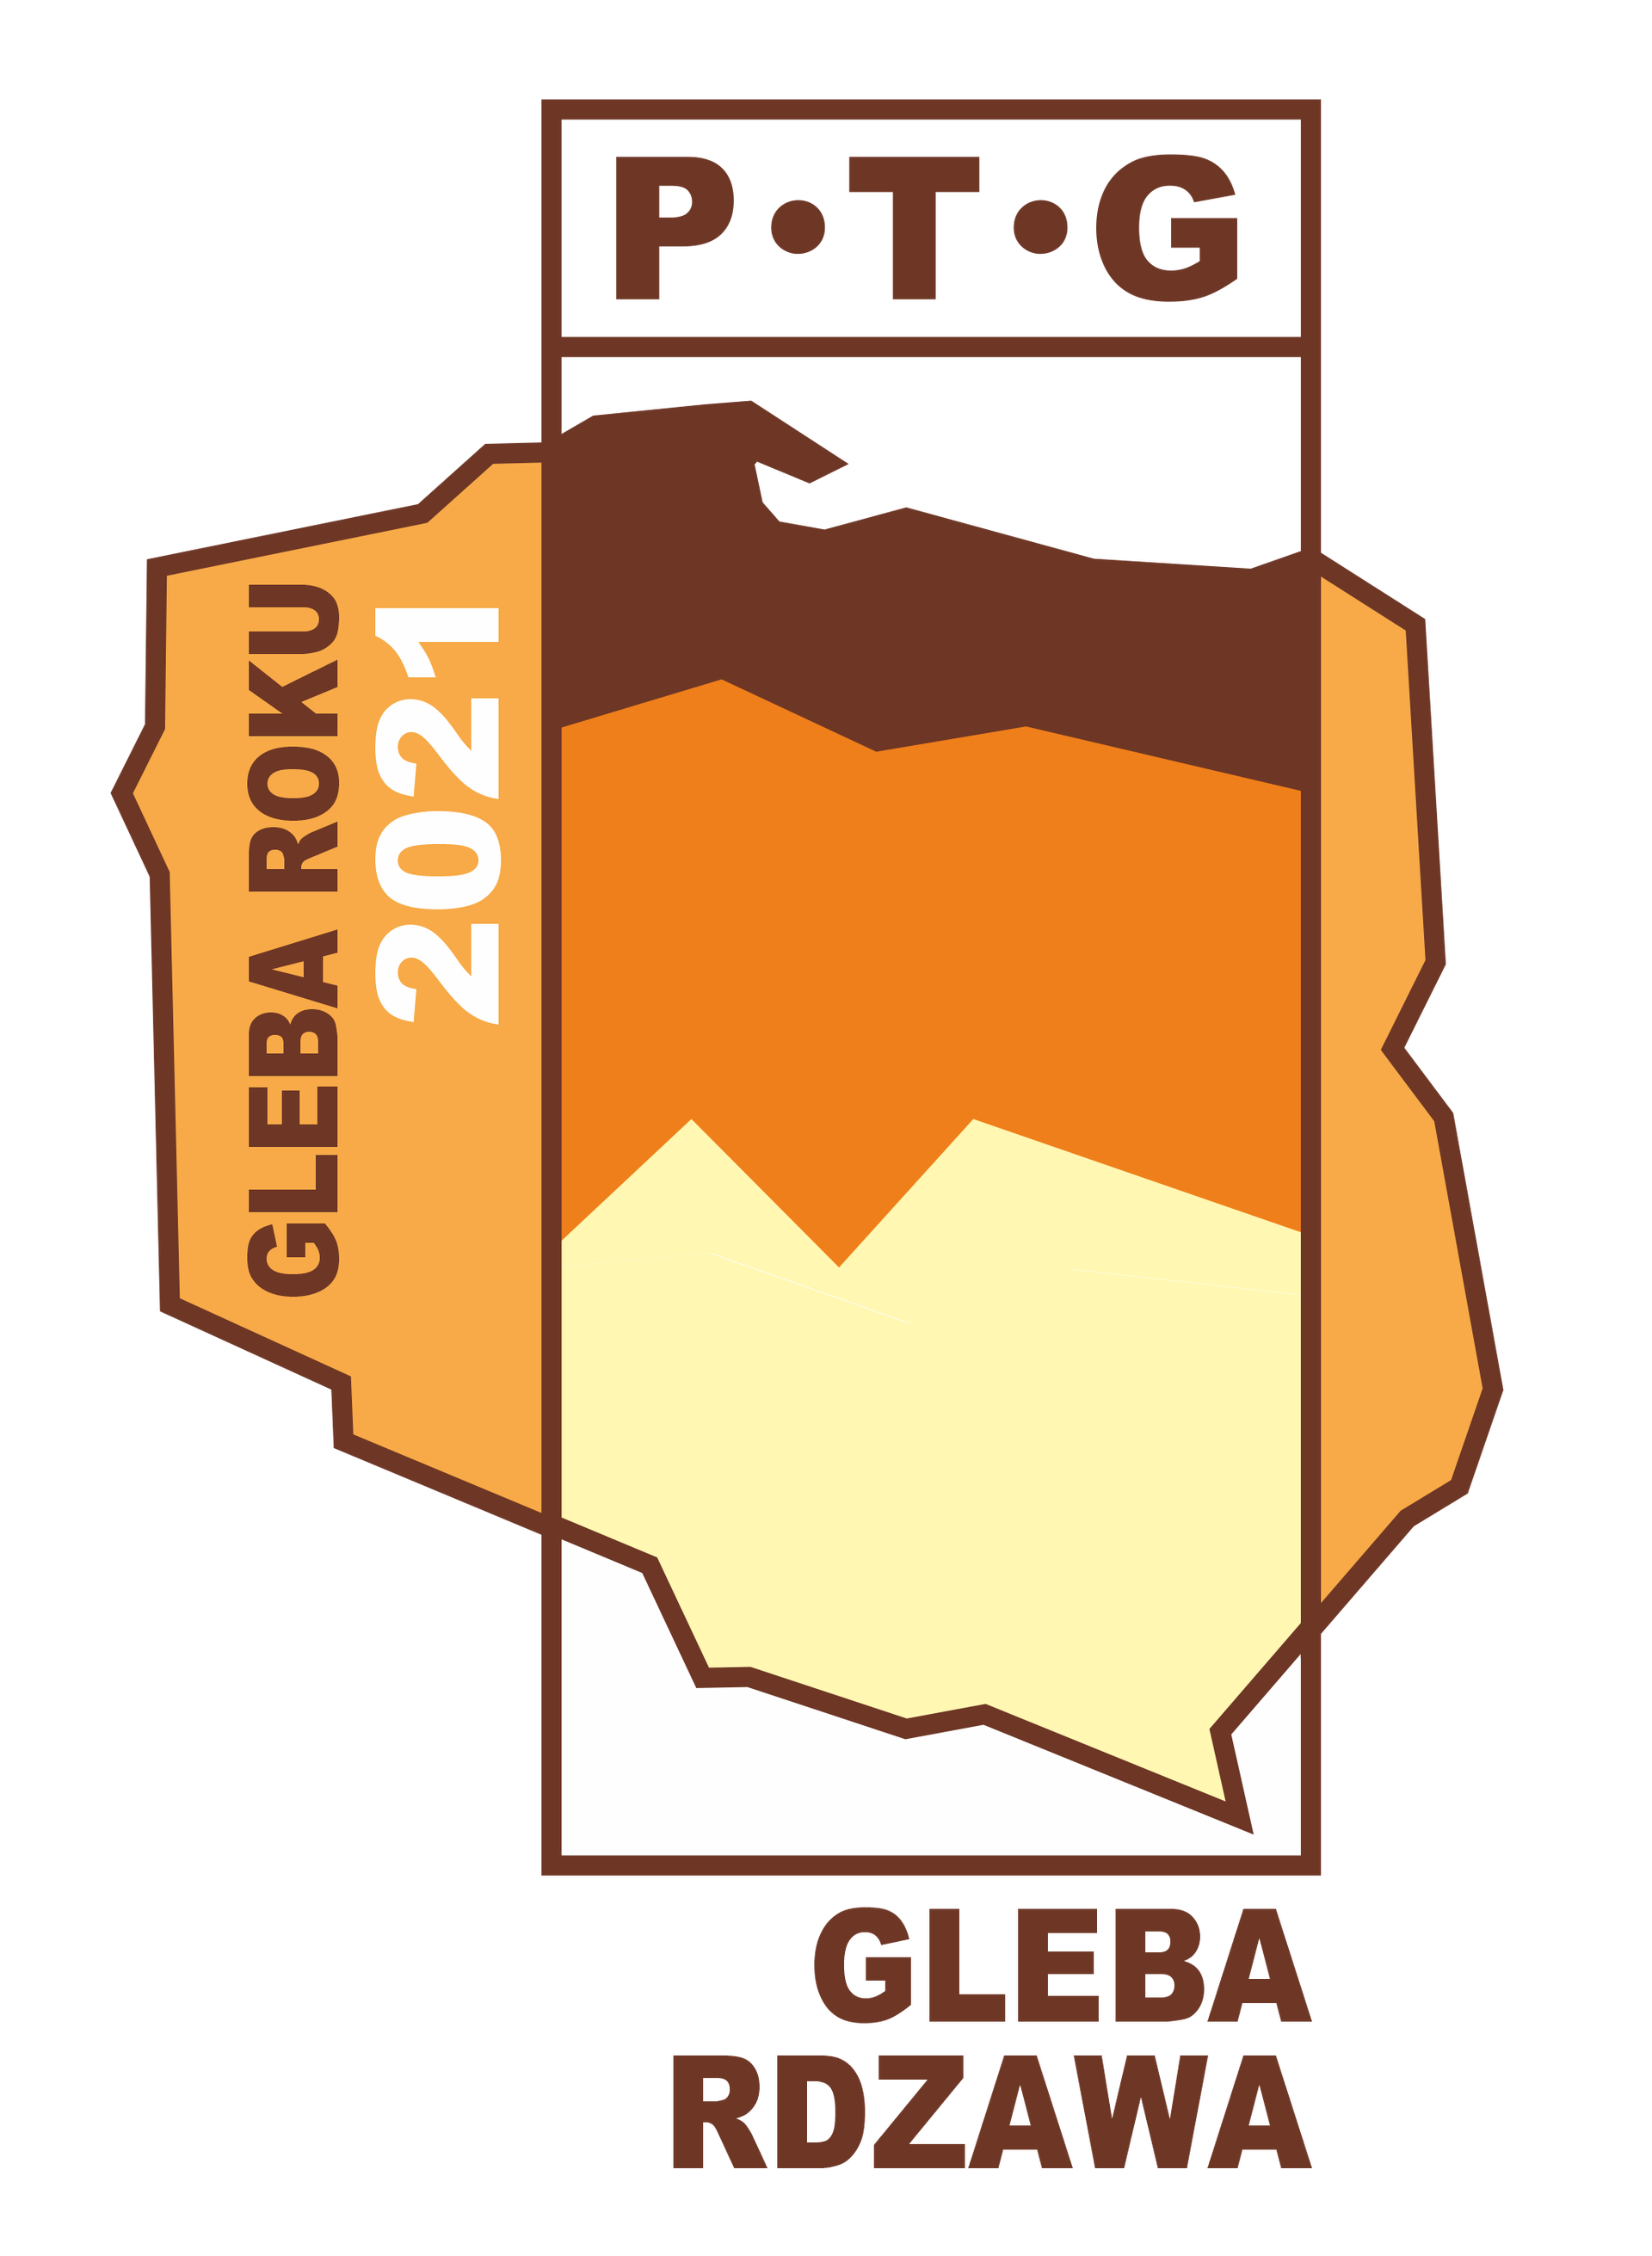 Gleba rdzawa logo